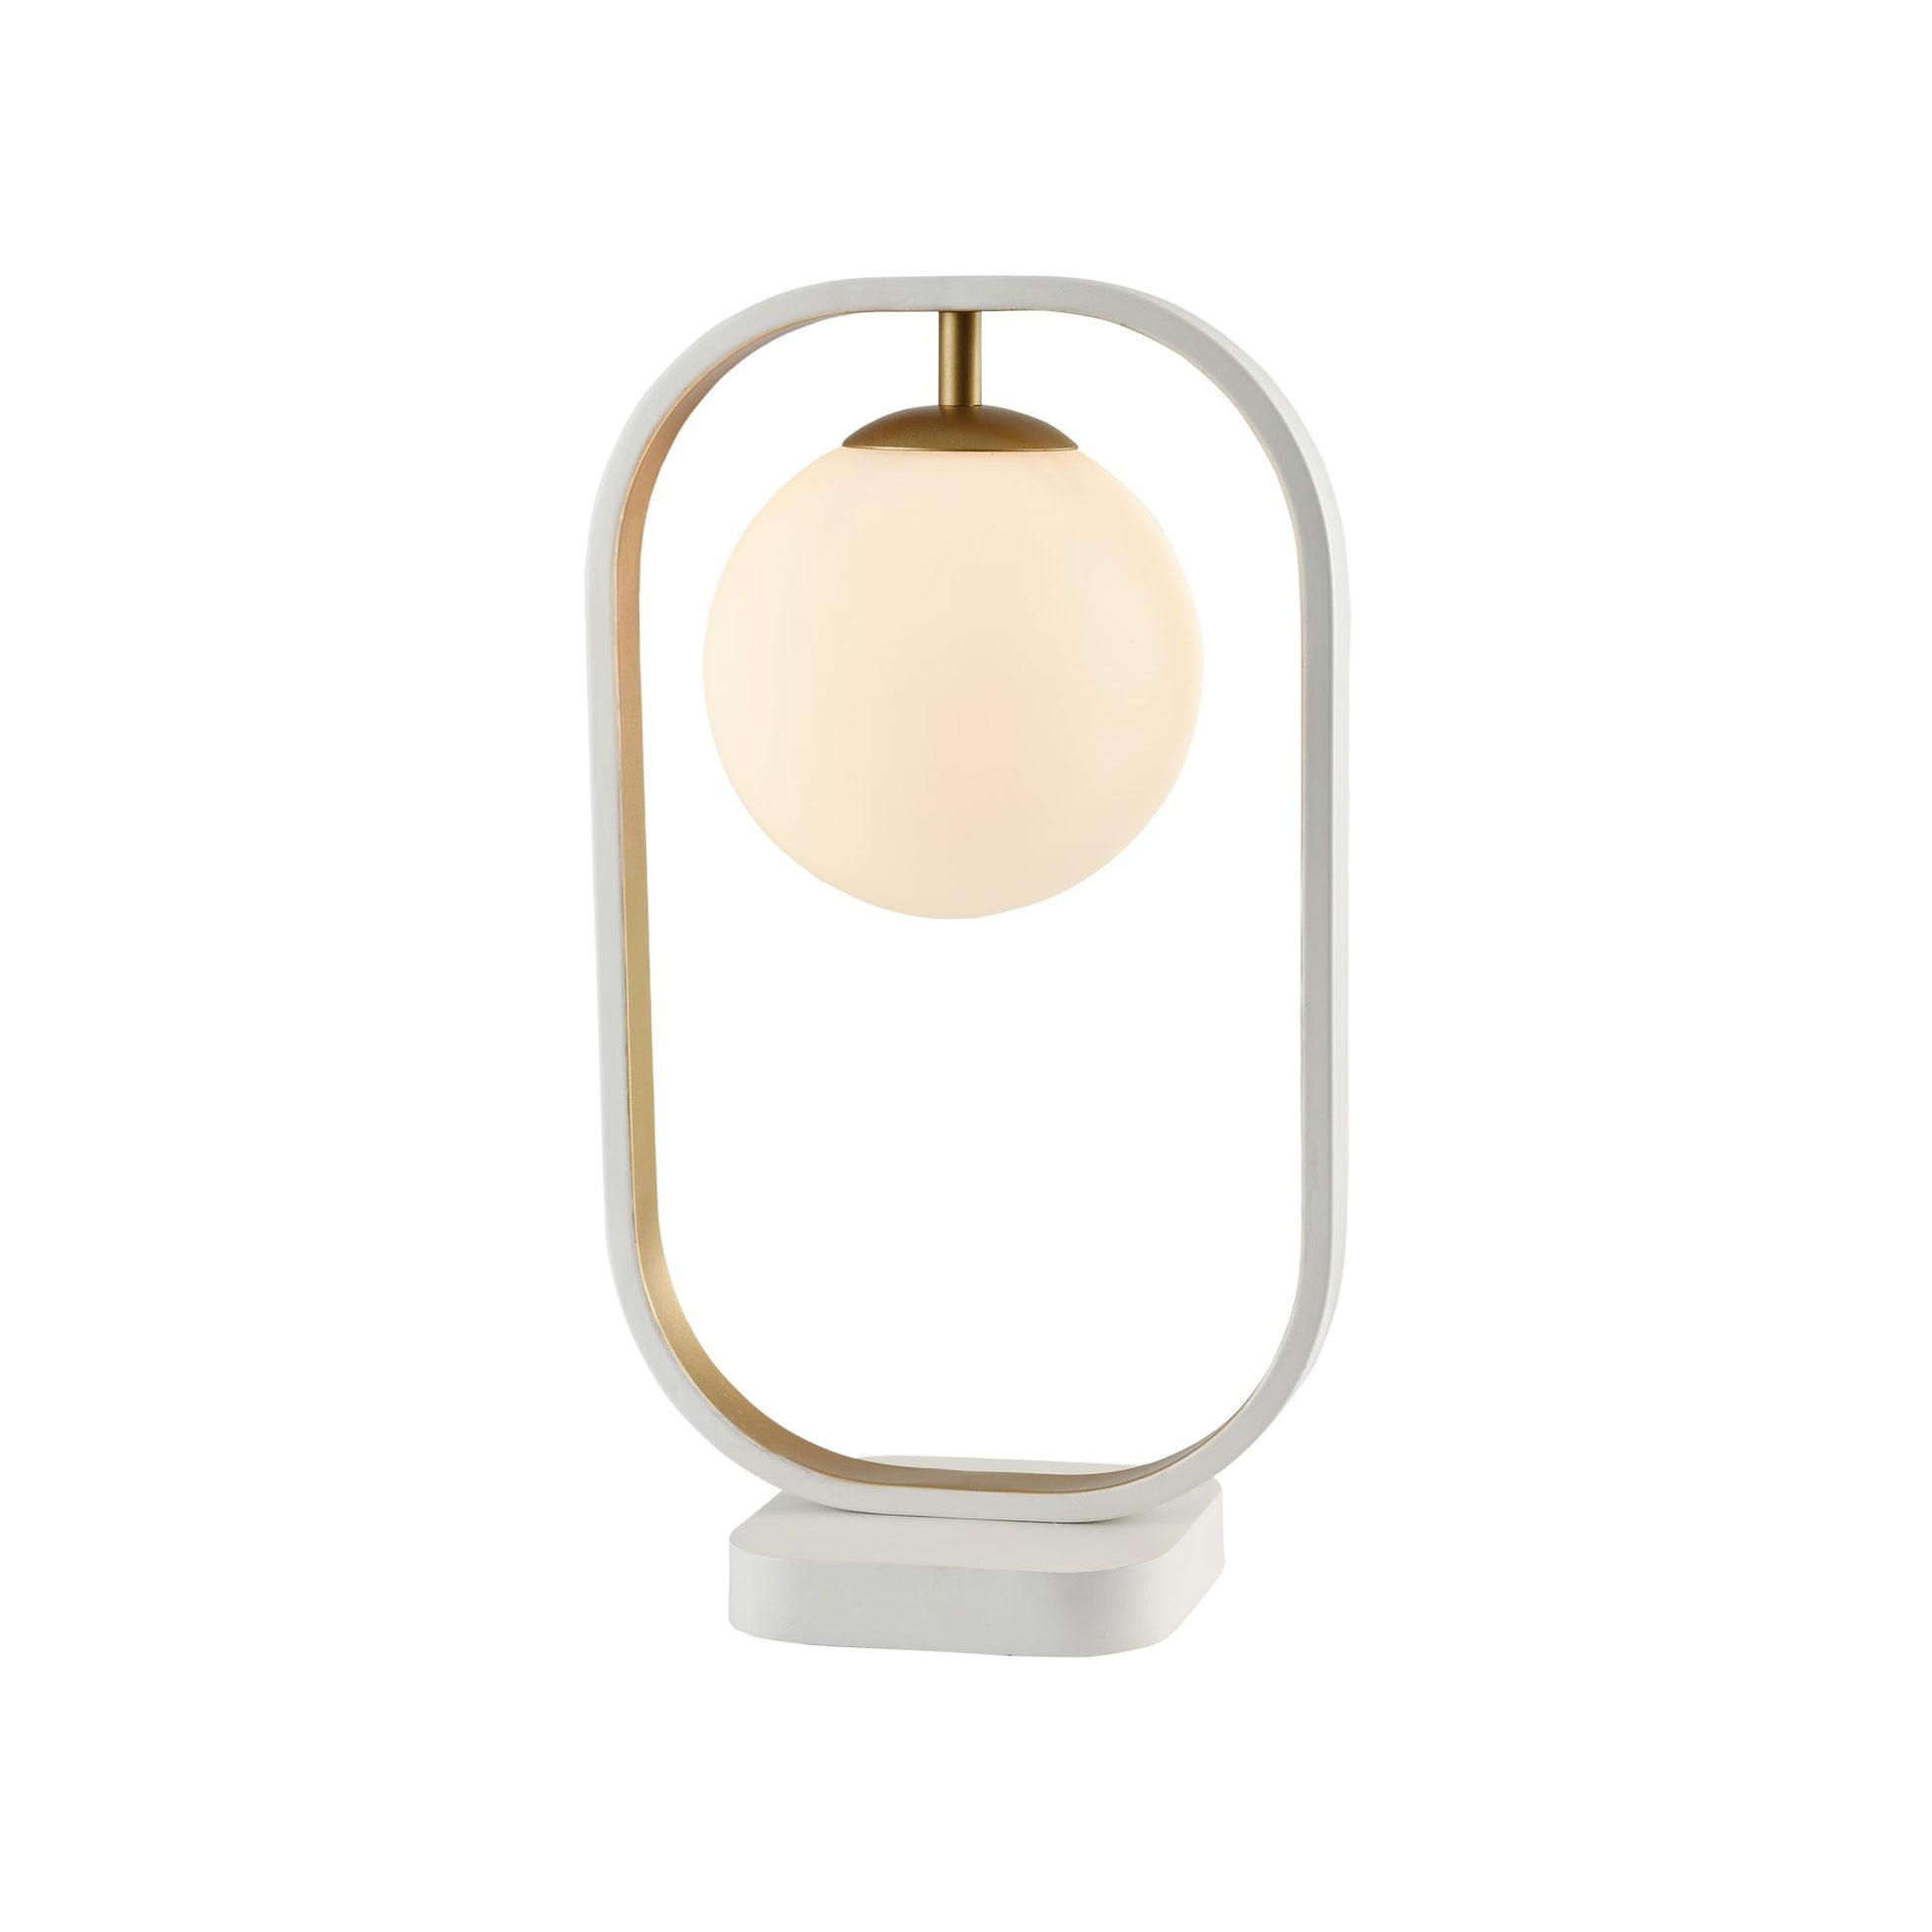 Une Lampe de Chevet contemporaine, fabriqué avec un globe lumineux entouré d'un cadre doré.